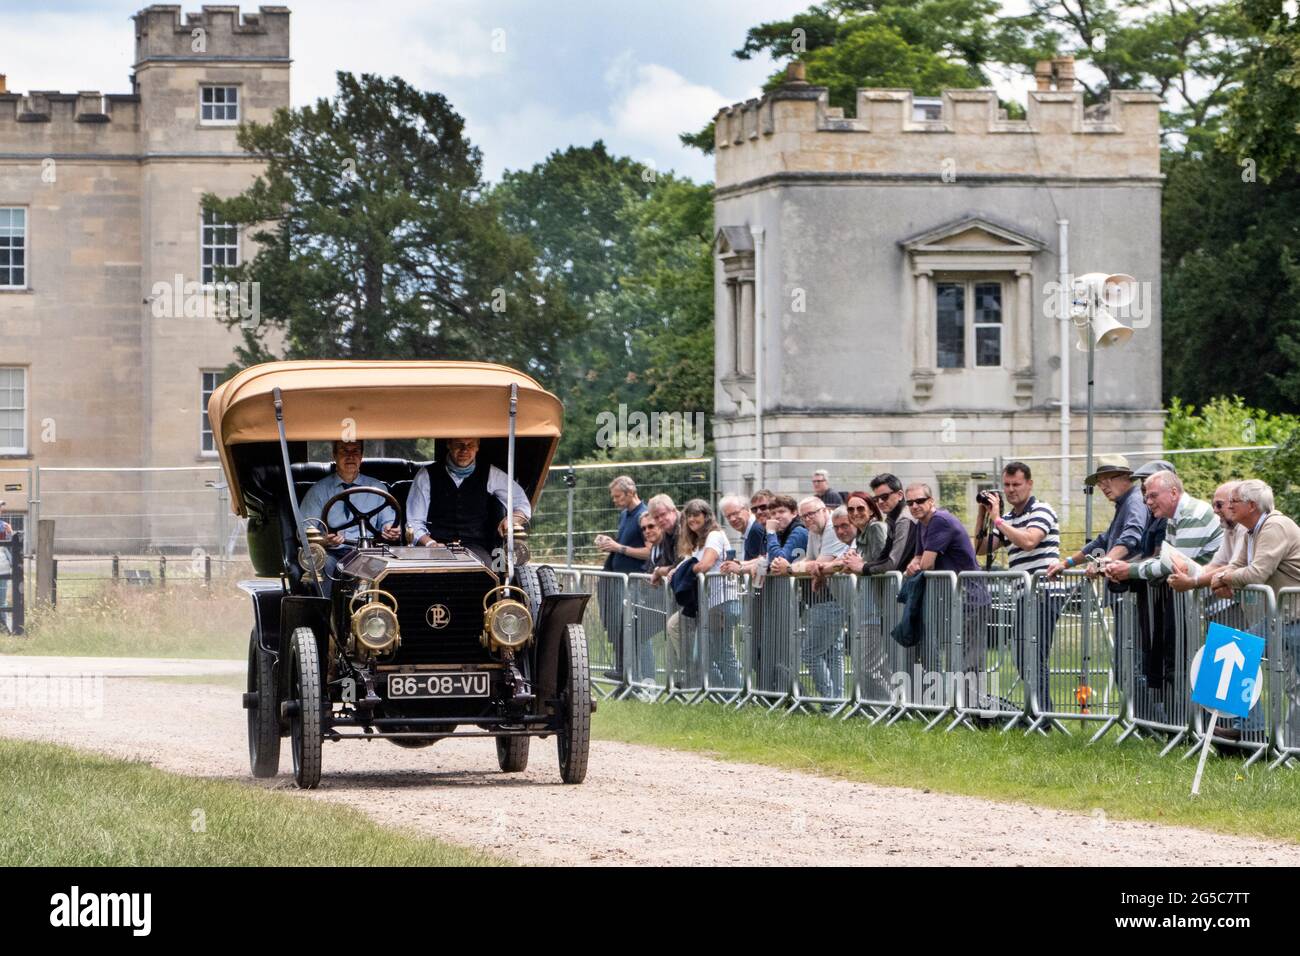 1886 Benz faisant l'objet d'une démonstration au salon de voiture London Classic 2021 Syon Park London UK 25/6/2021 Banque D'Images